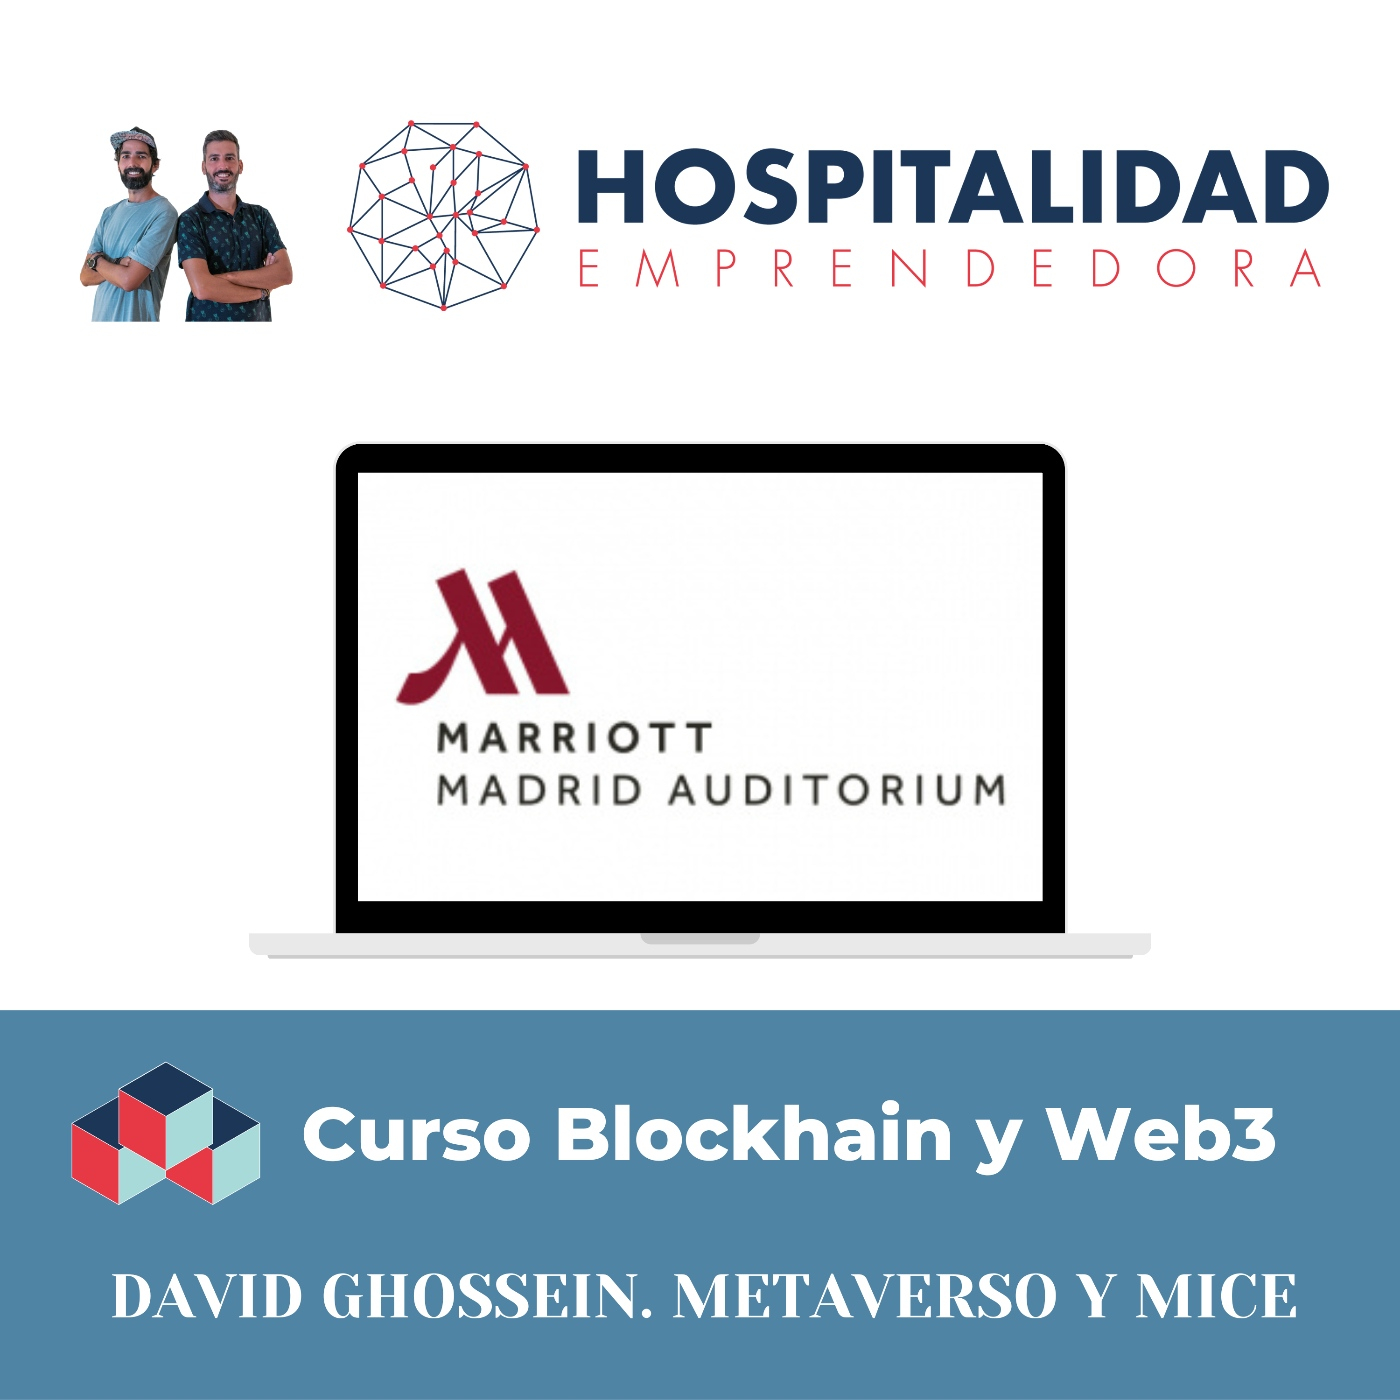 Curso Blockchain y Web3 Turismo y Hotelería. Sesion 5 con David Ghossein. Metaverso y MICE. Madrid Marriott Auditorium